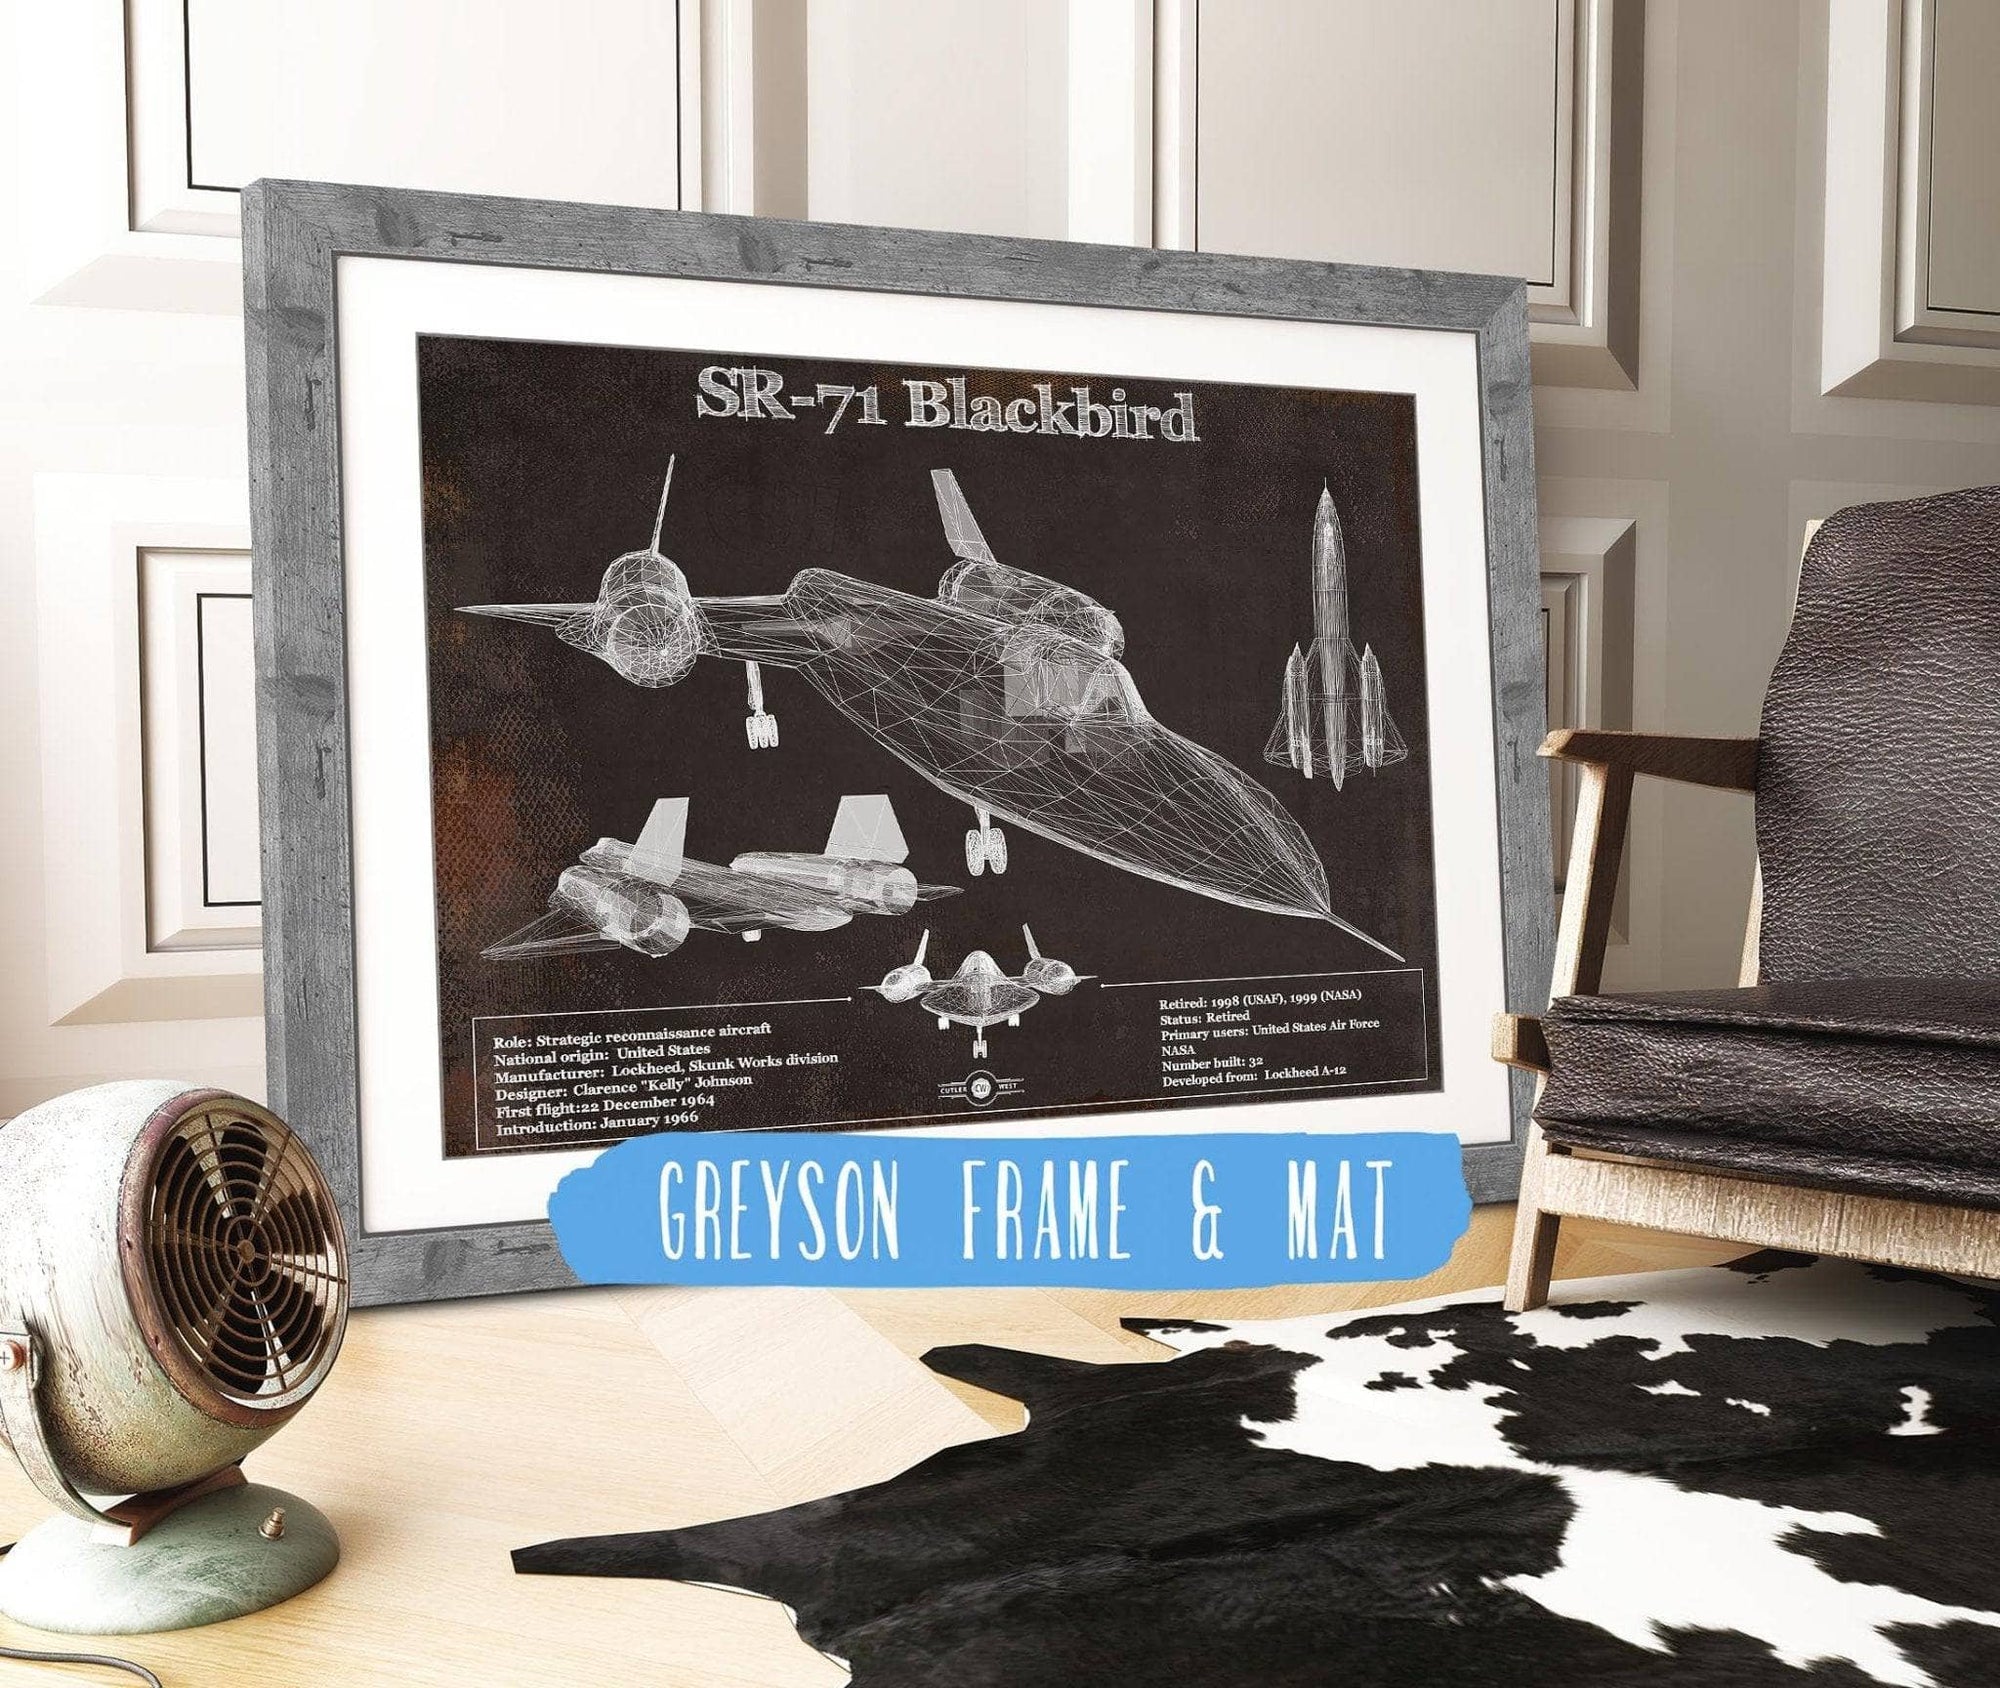 Cutler West Military Aircraft SR-71 Blackbird Black Version - Aircraft Original Military Wall Art